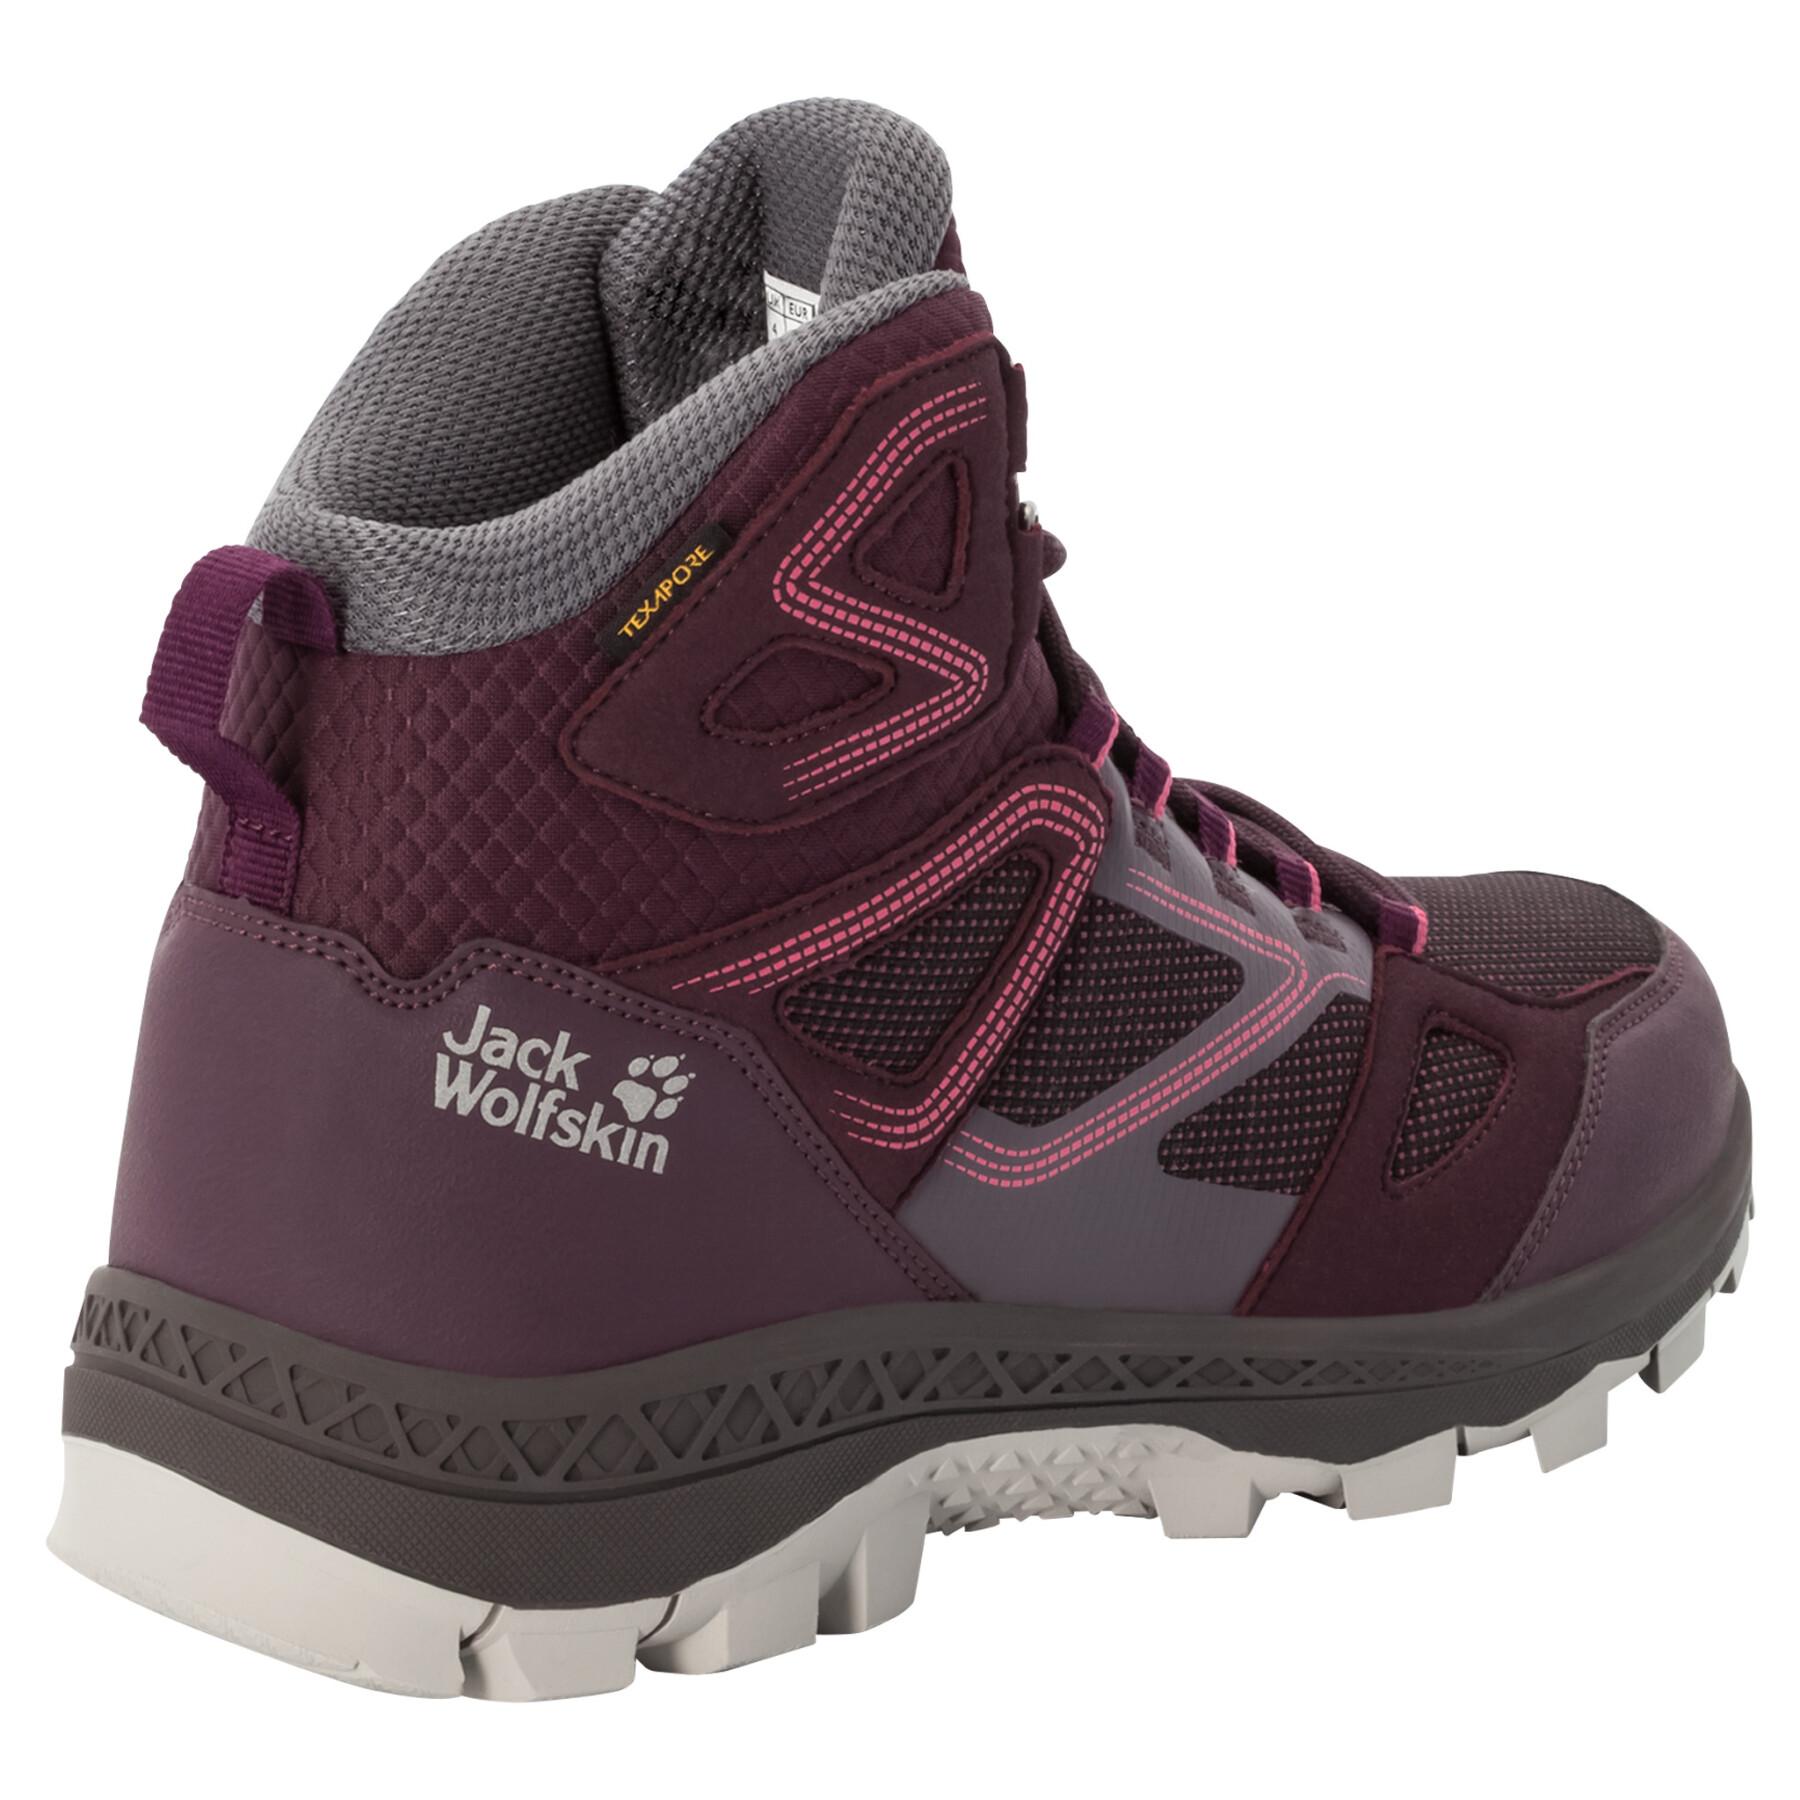 Women's high boots Jack Wolfskin downhill texapore